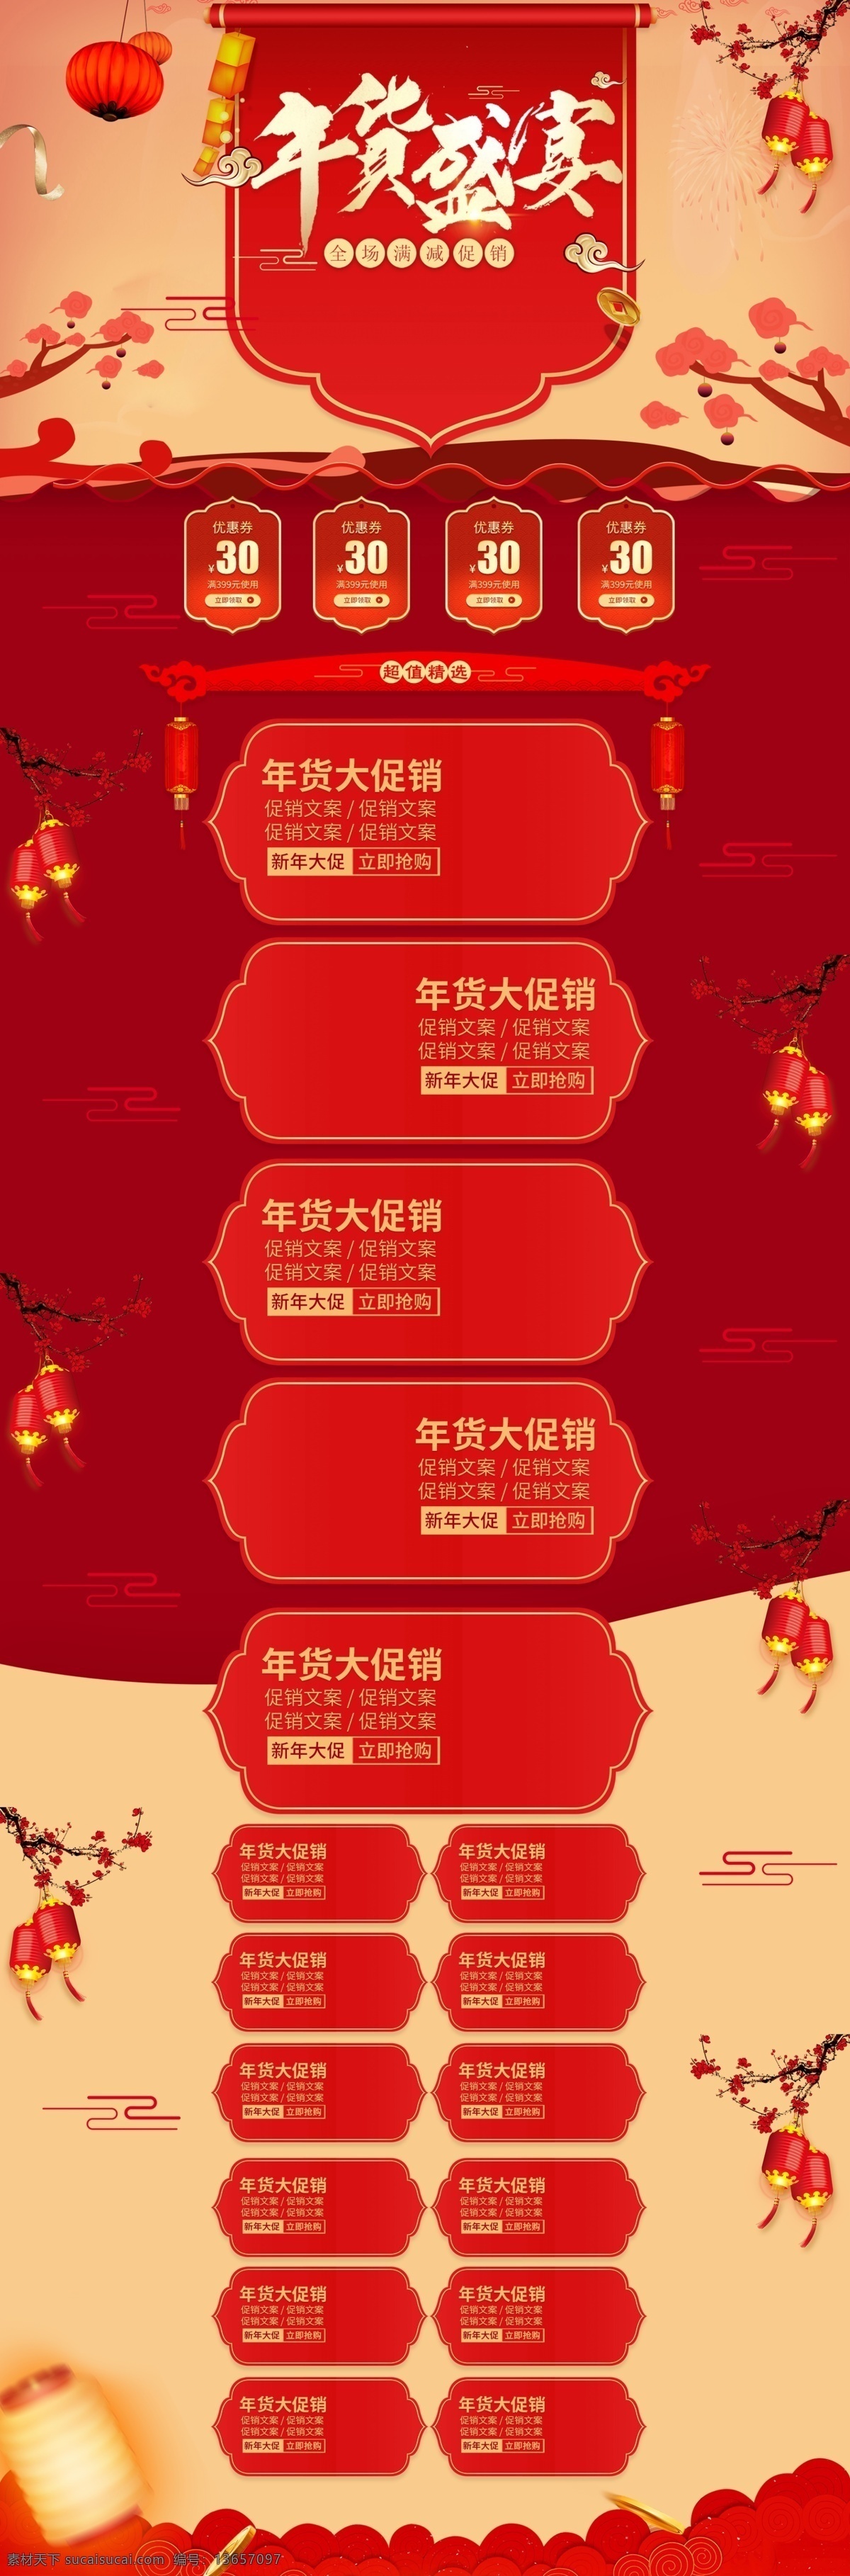 喜庆 中国 风 年货 盛典 首页 促销 装修 电商 模板 中国风 年货节 年货盛典 活动